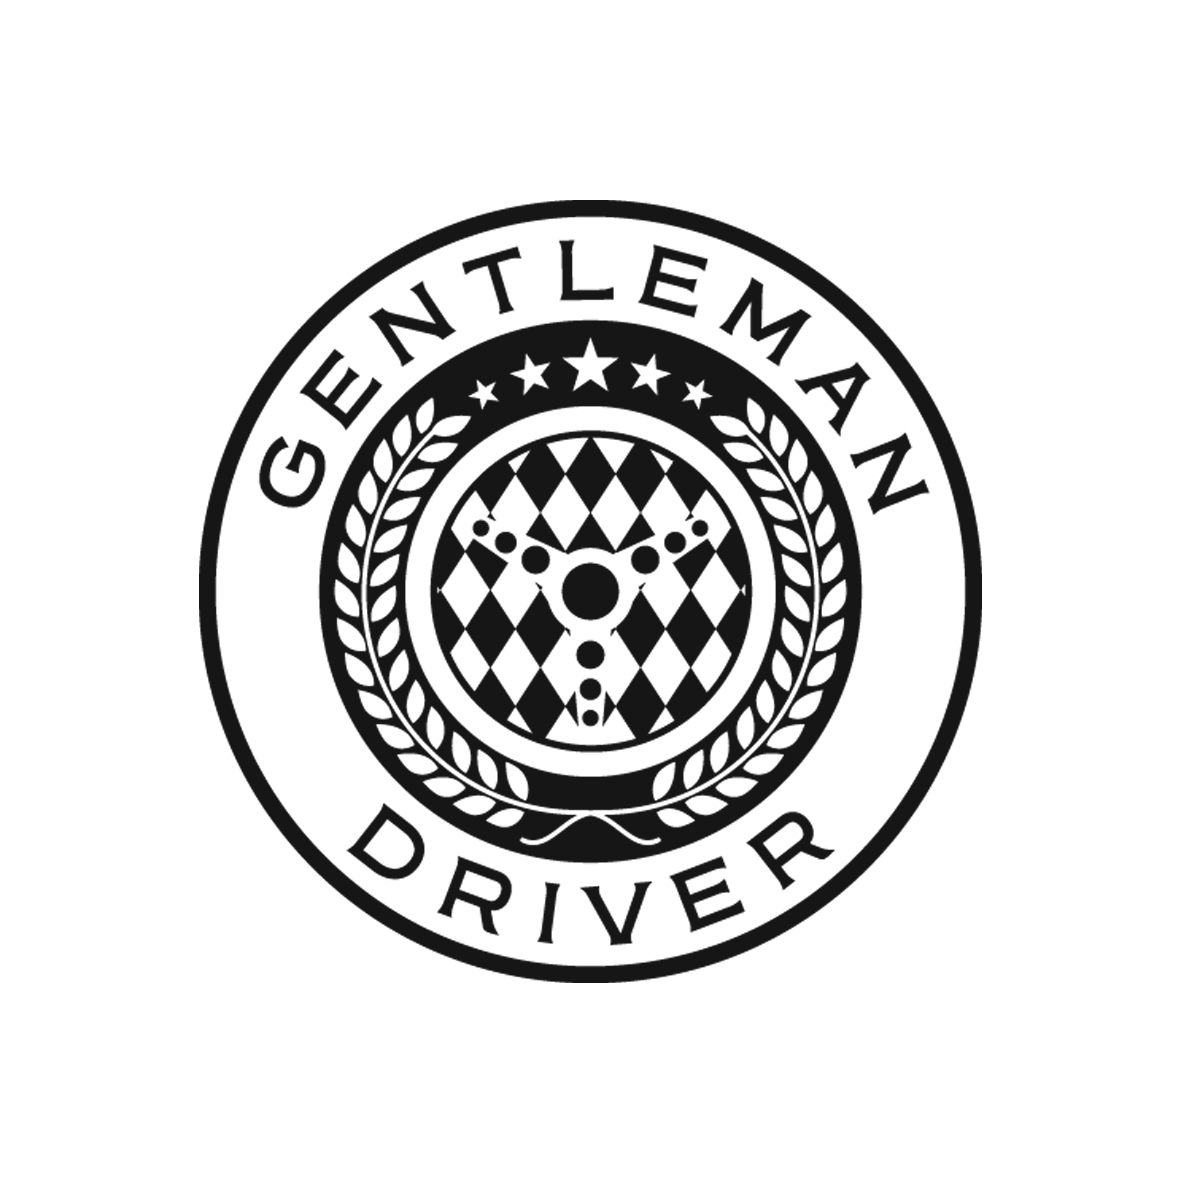 Gentleman Driver